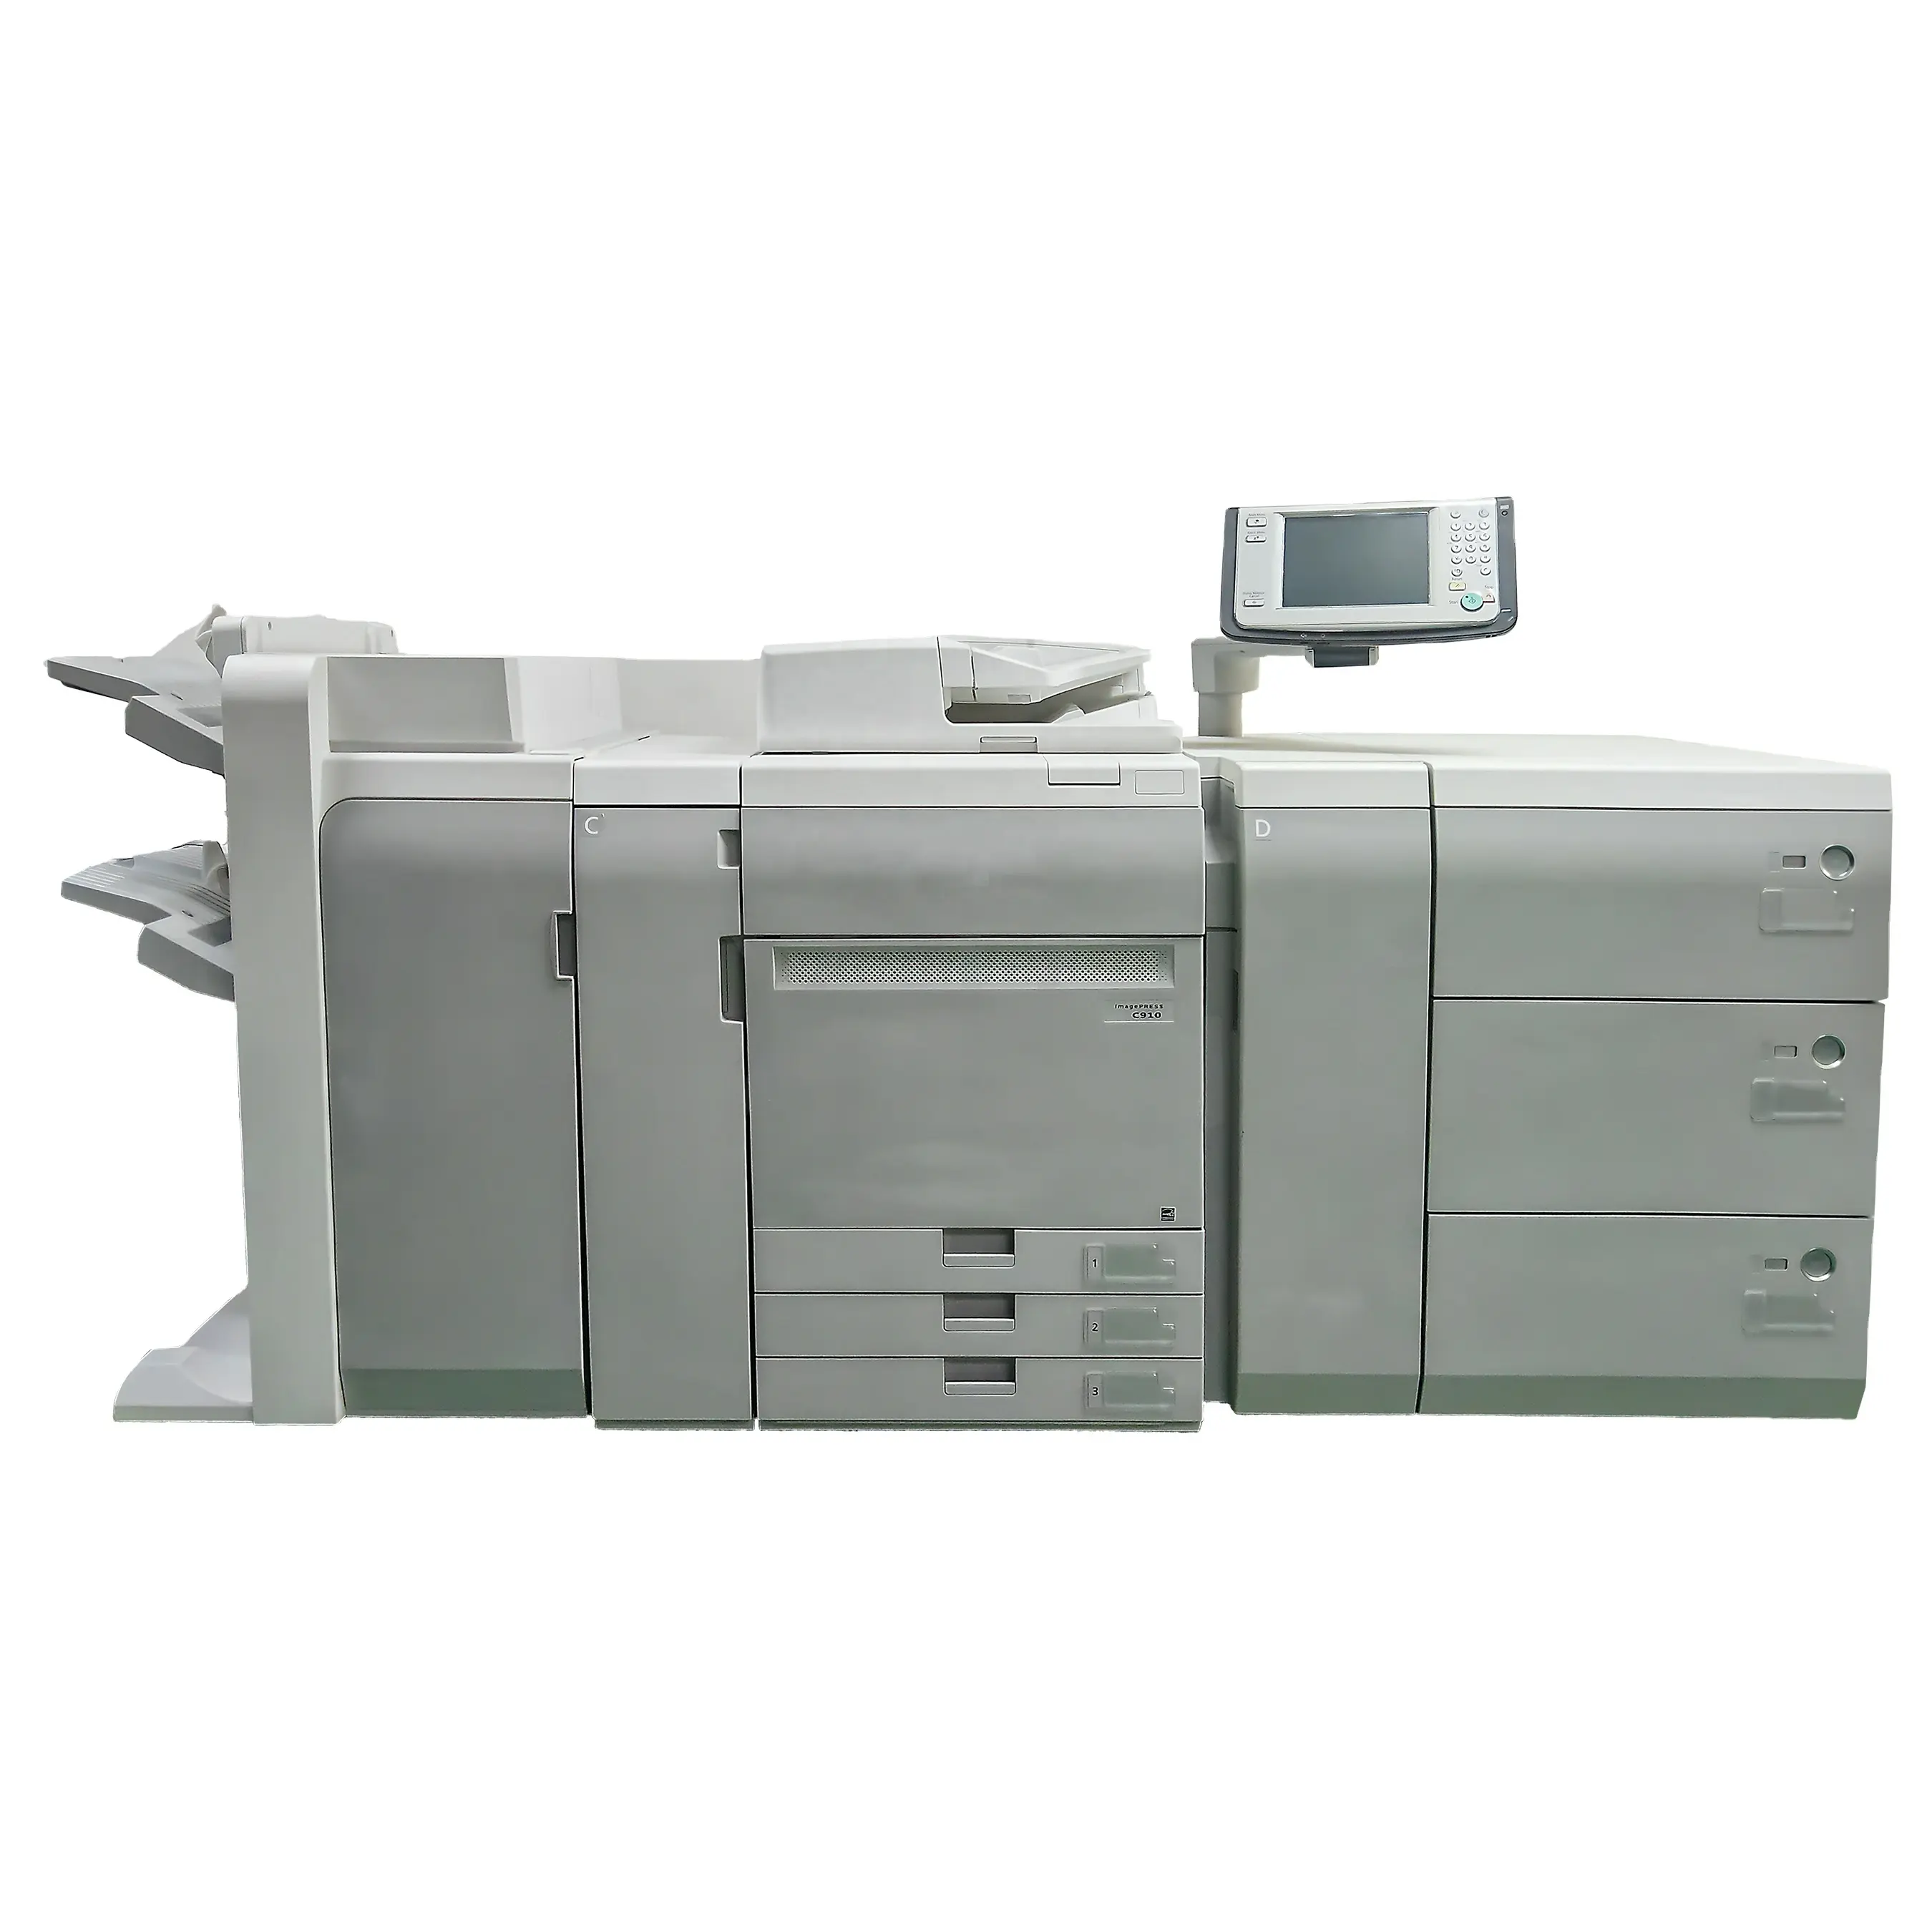 Fotocopiadora reacondicionada exquisita de grado profesional Copiadoras de segunda mano para impresora digital reacondicionada C910